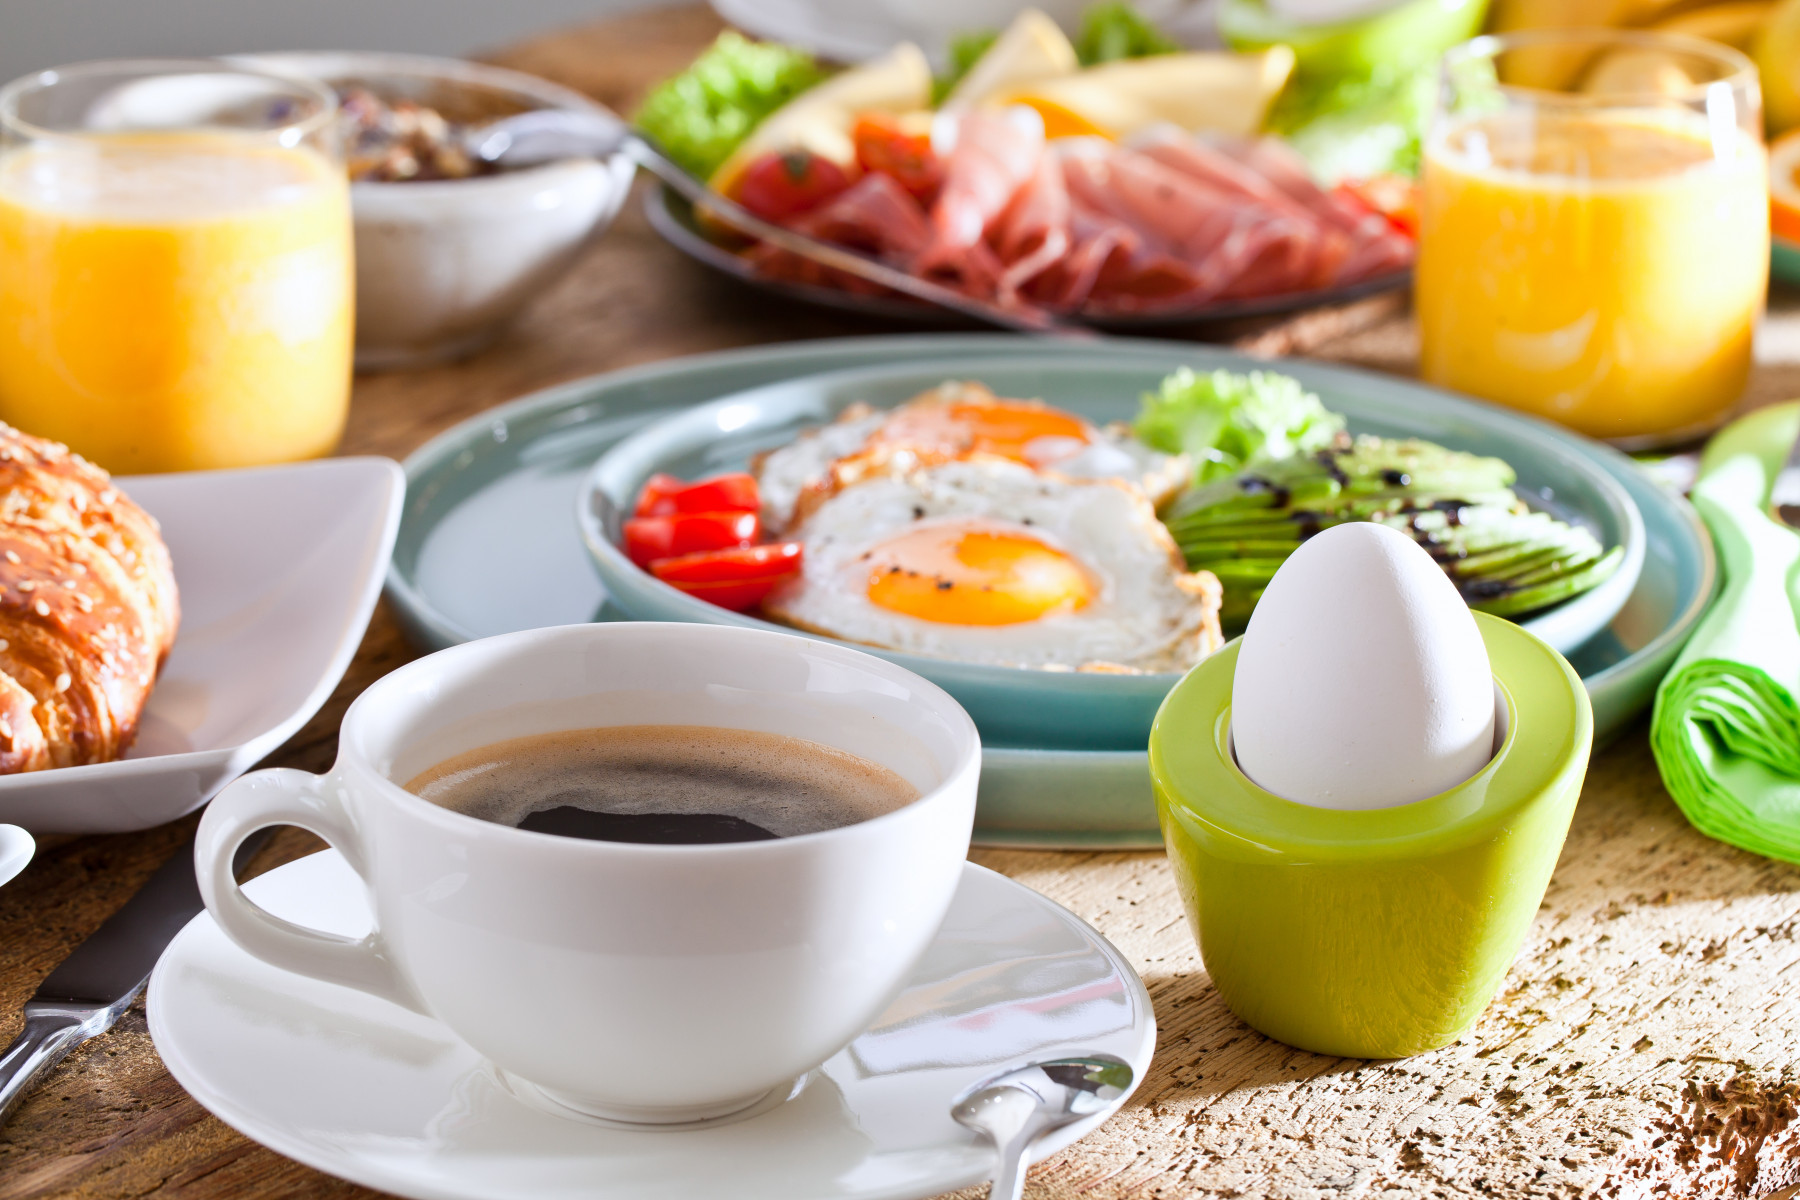 Рабочий день точно будет продуктивным: диетолог рассказала, каким должен быть полезный завтрак